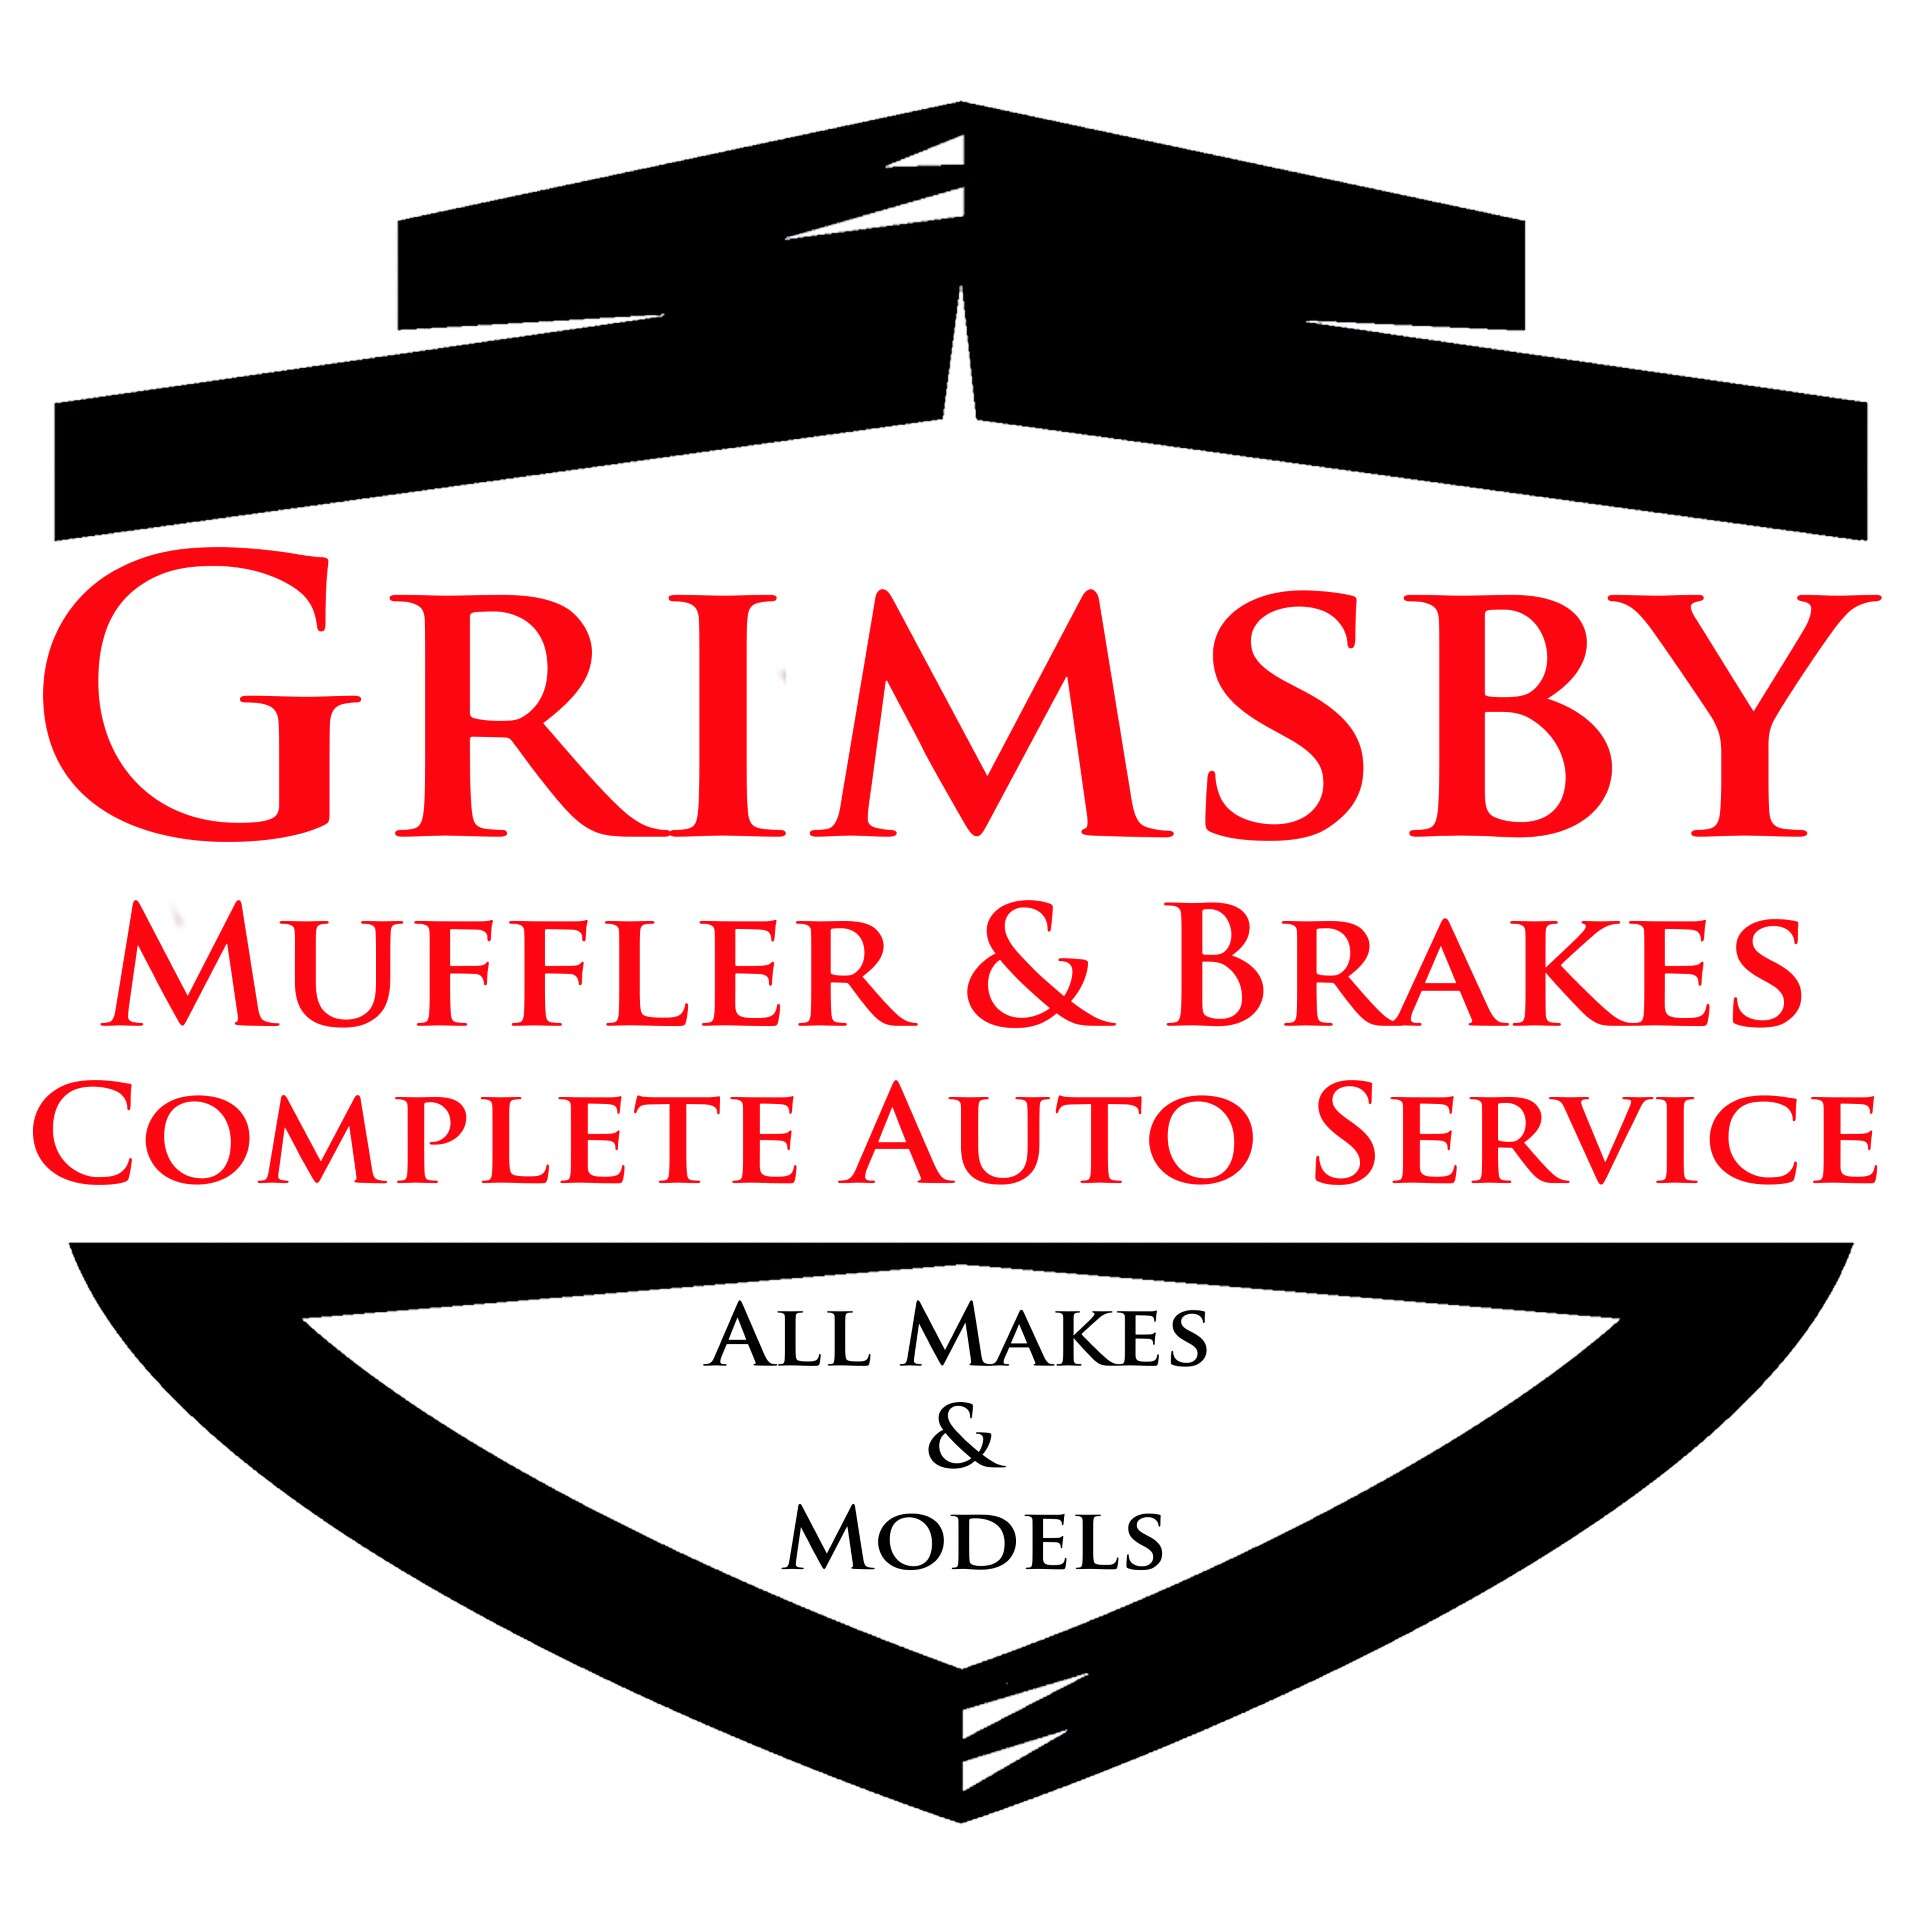 GRIMSBY MUFFLER & BRAKES COMPLETE AUTO SERVICE